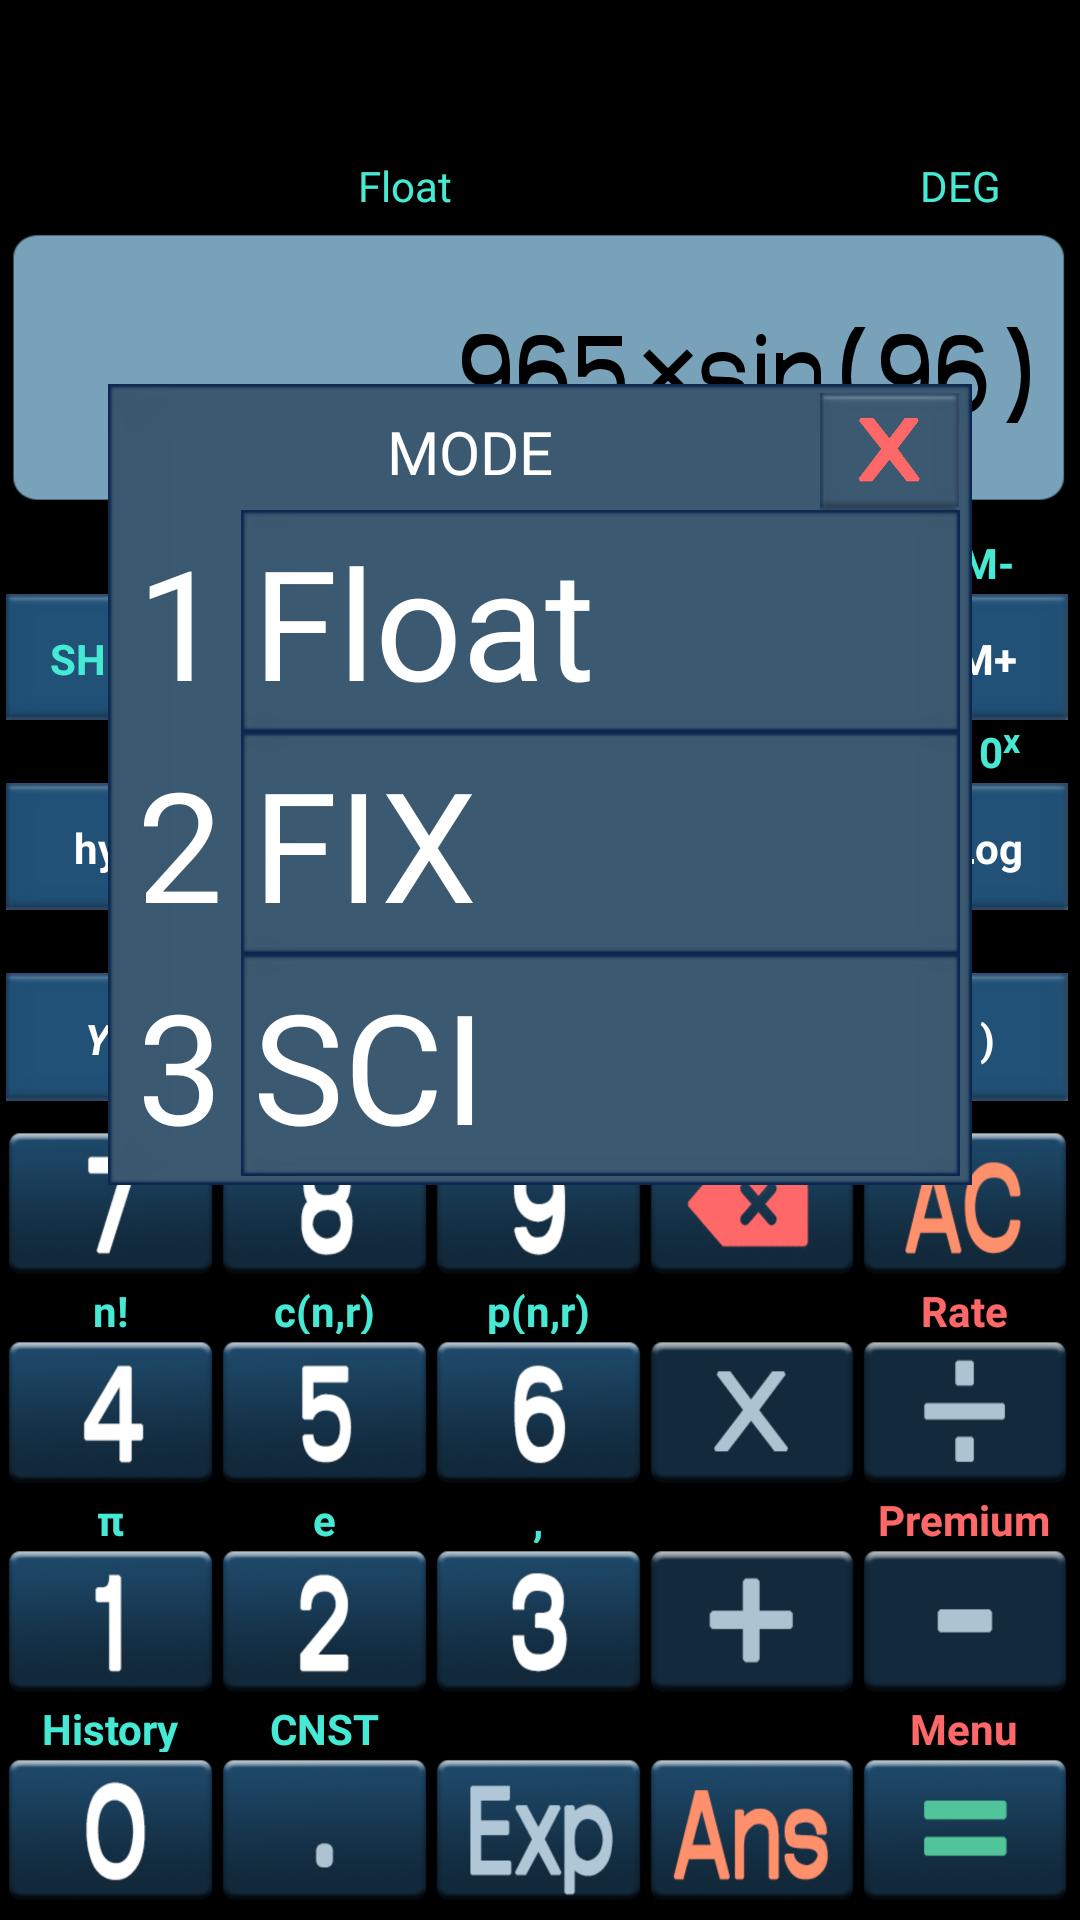 Cara Menggunakan Kalkulator Casio Fx 991ms